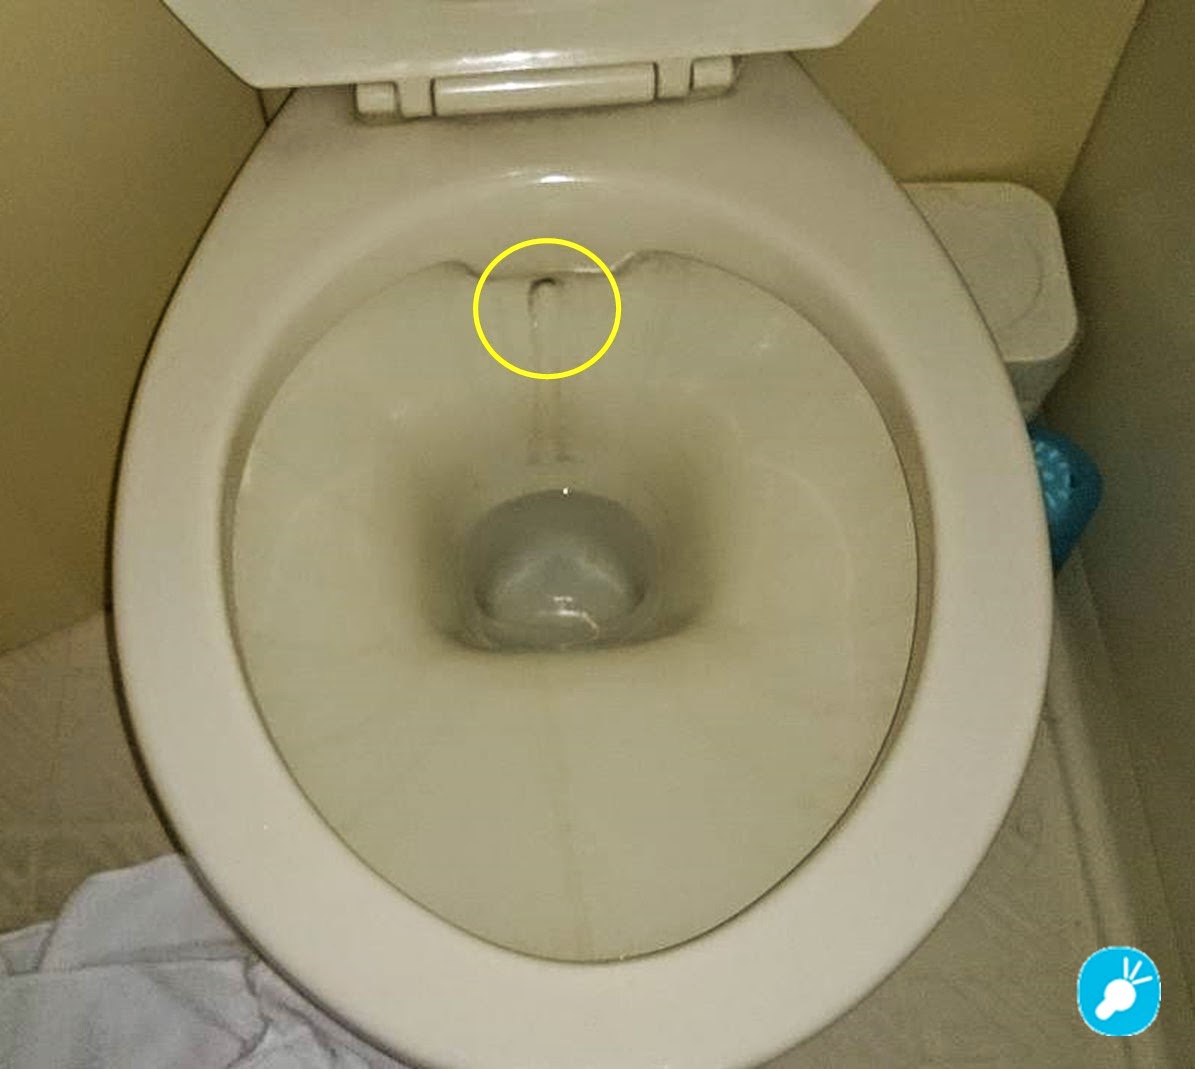 株式会社アイズ スタッフブログ トイレの黒ずみの原因 ⇒ ゴムフロートが怪しい！